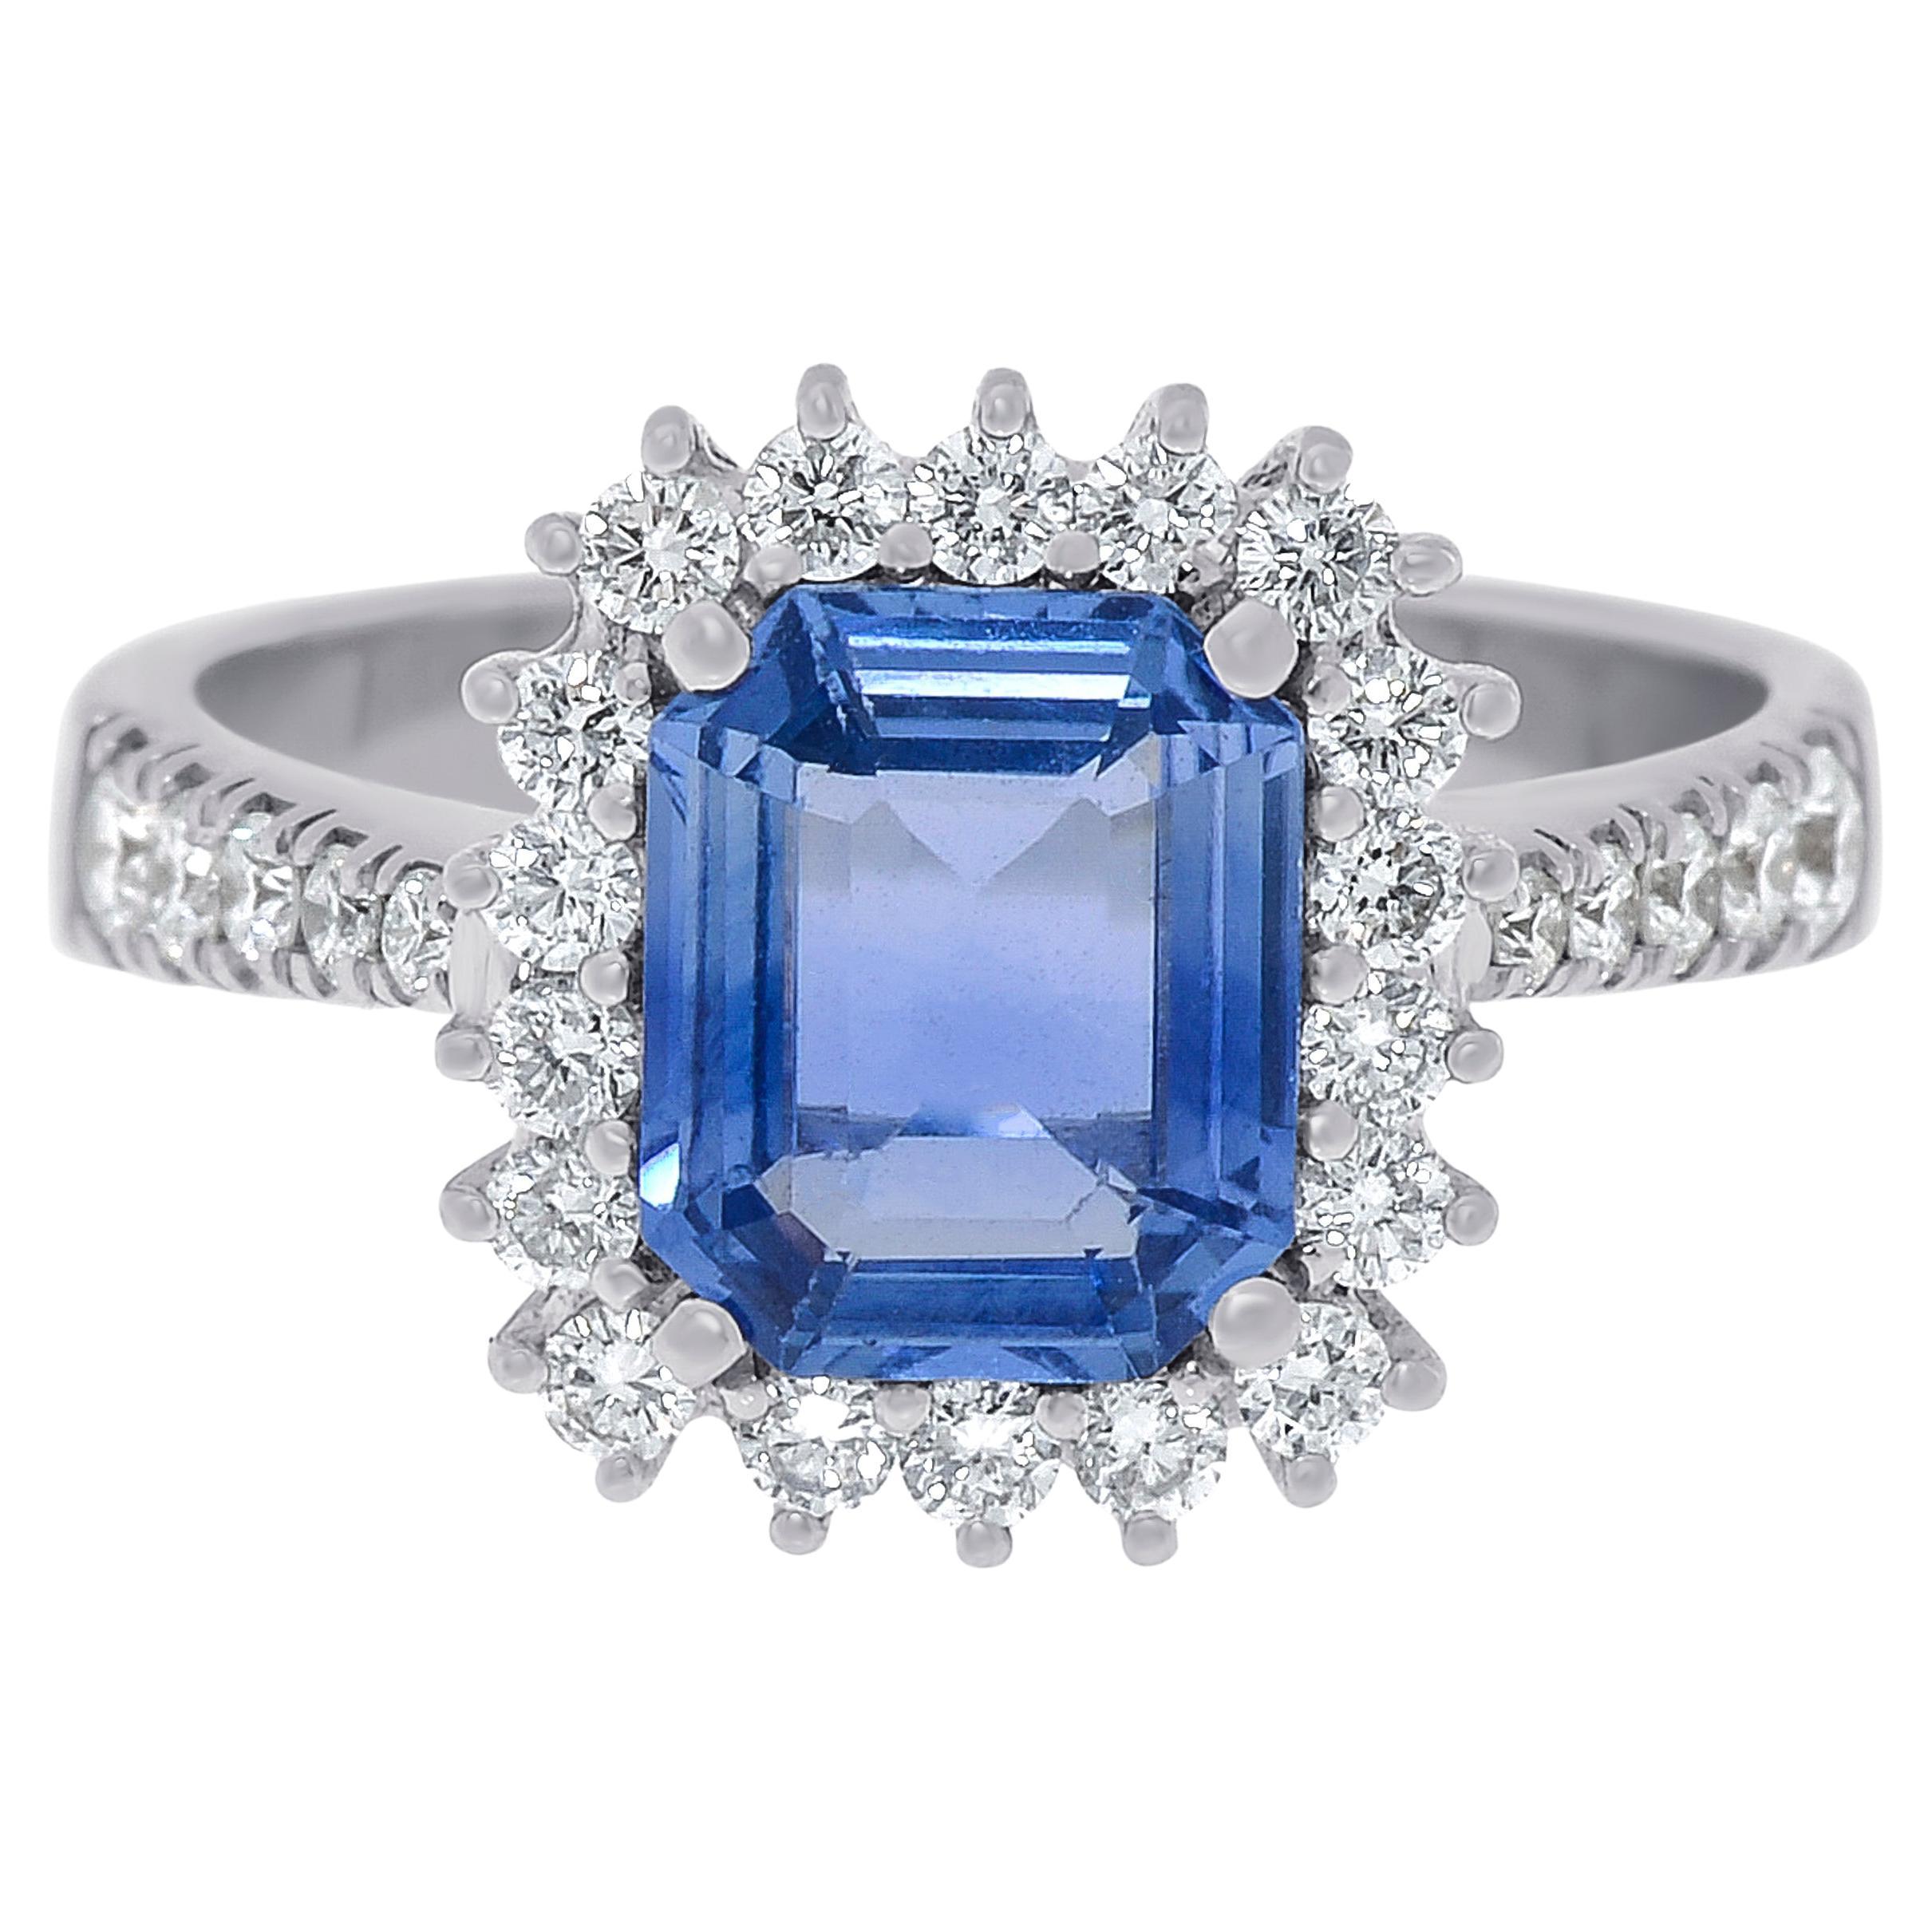 Zydo 18K White Gold Sapphire & Diamonds Cocktail Ring sz. 7